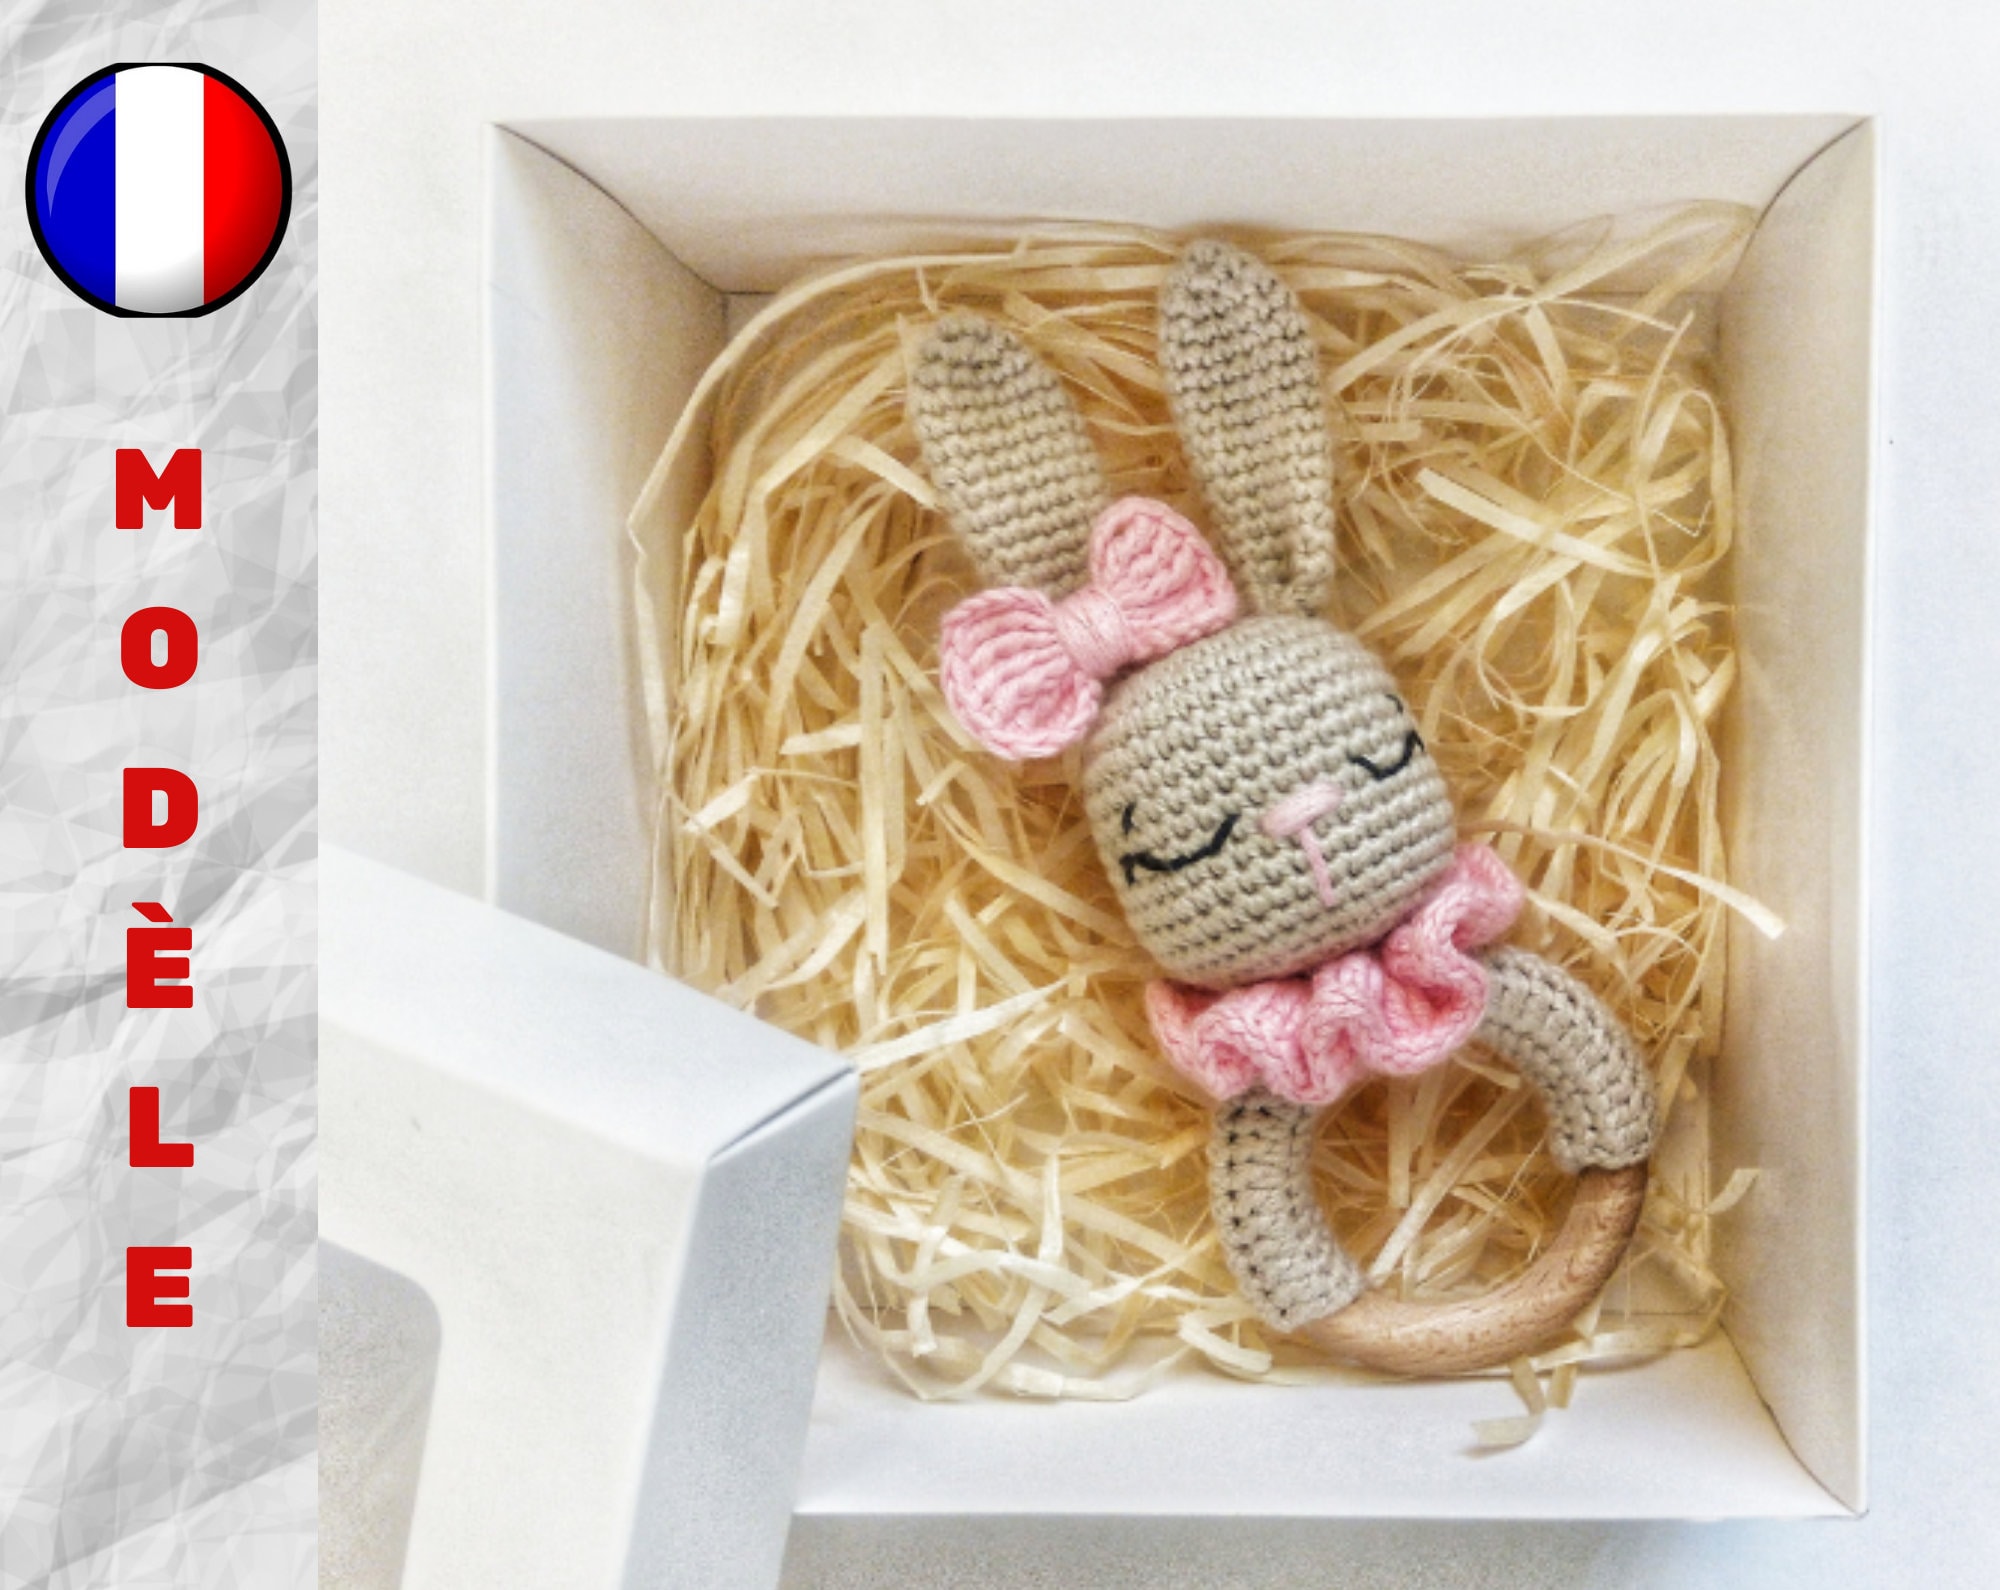 Kit Crochet 'Com'1 idée' Hochet pour bébé Molly - La Fourmi creative